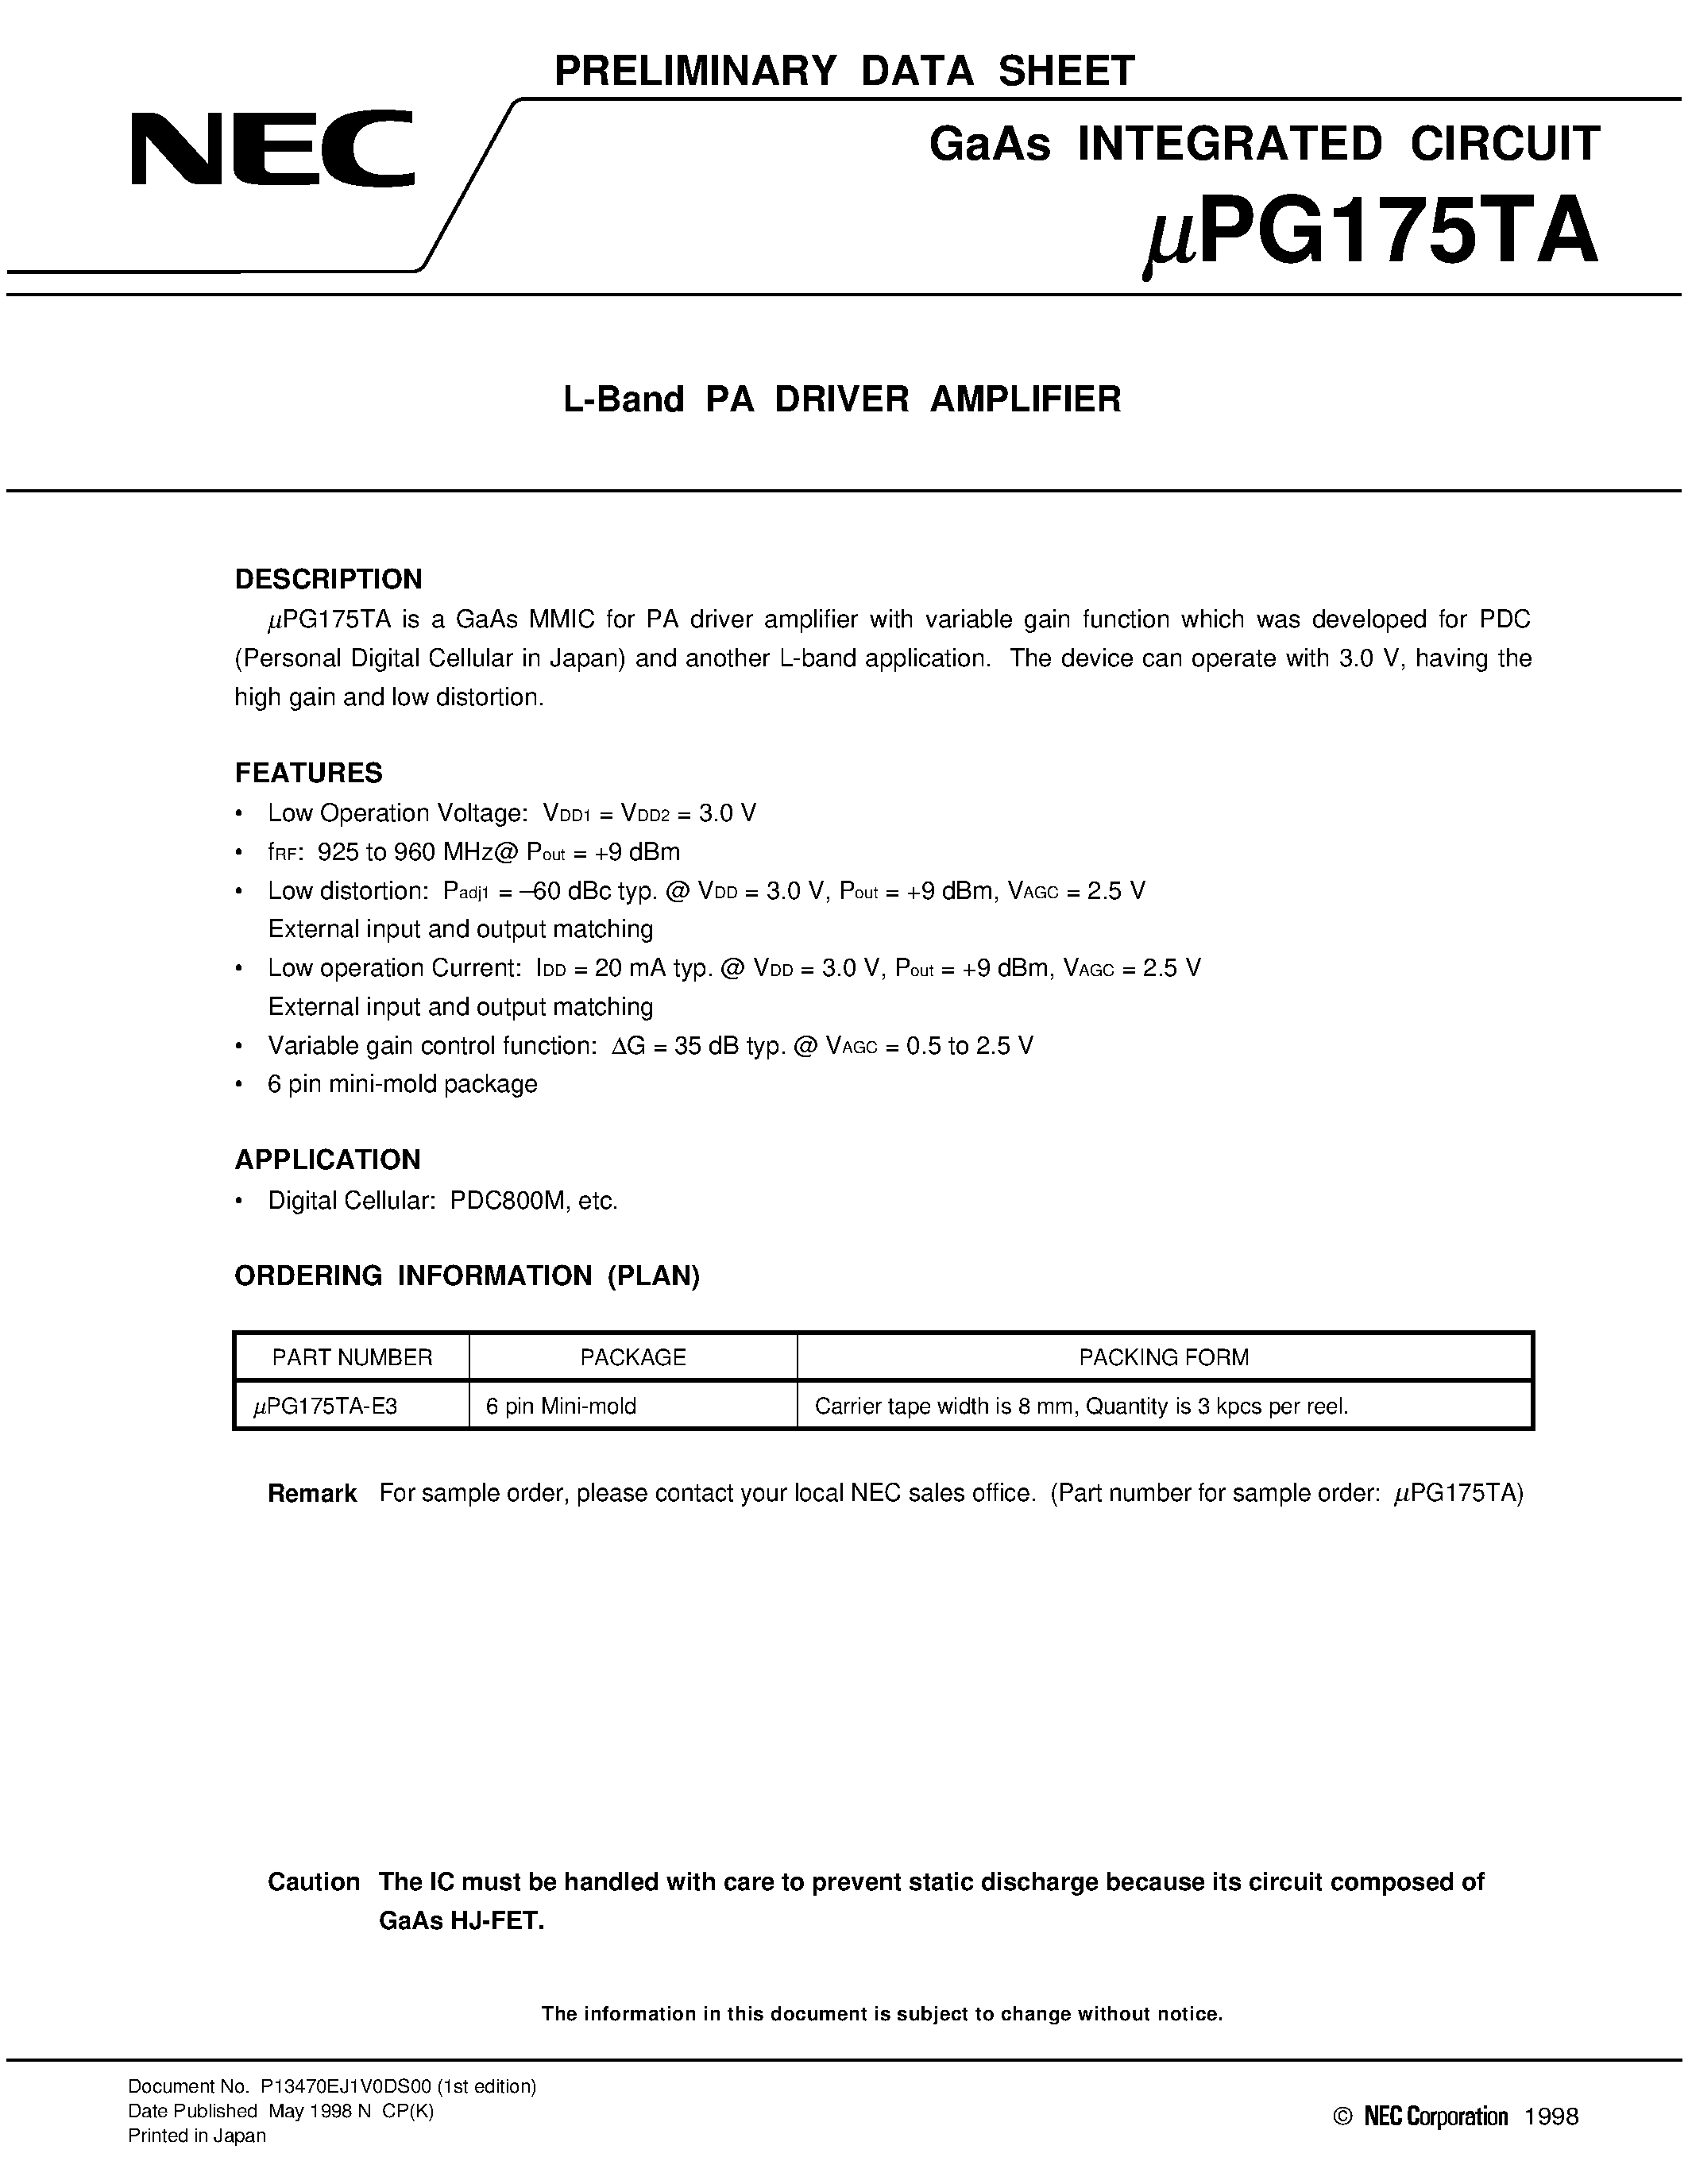 Даташит UPG175TA-E3 - L-Band PA DRIVER AMPLIFIER страница 1